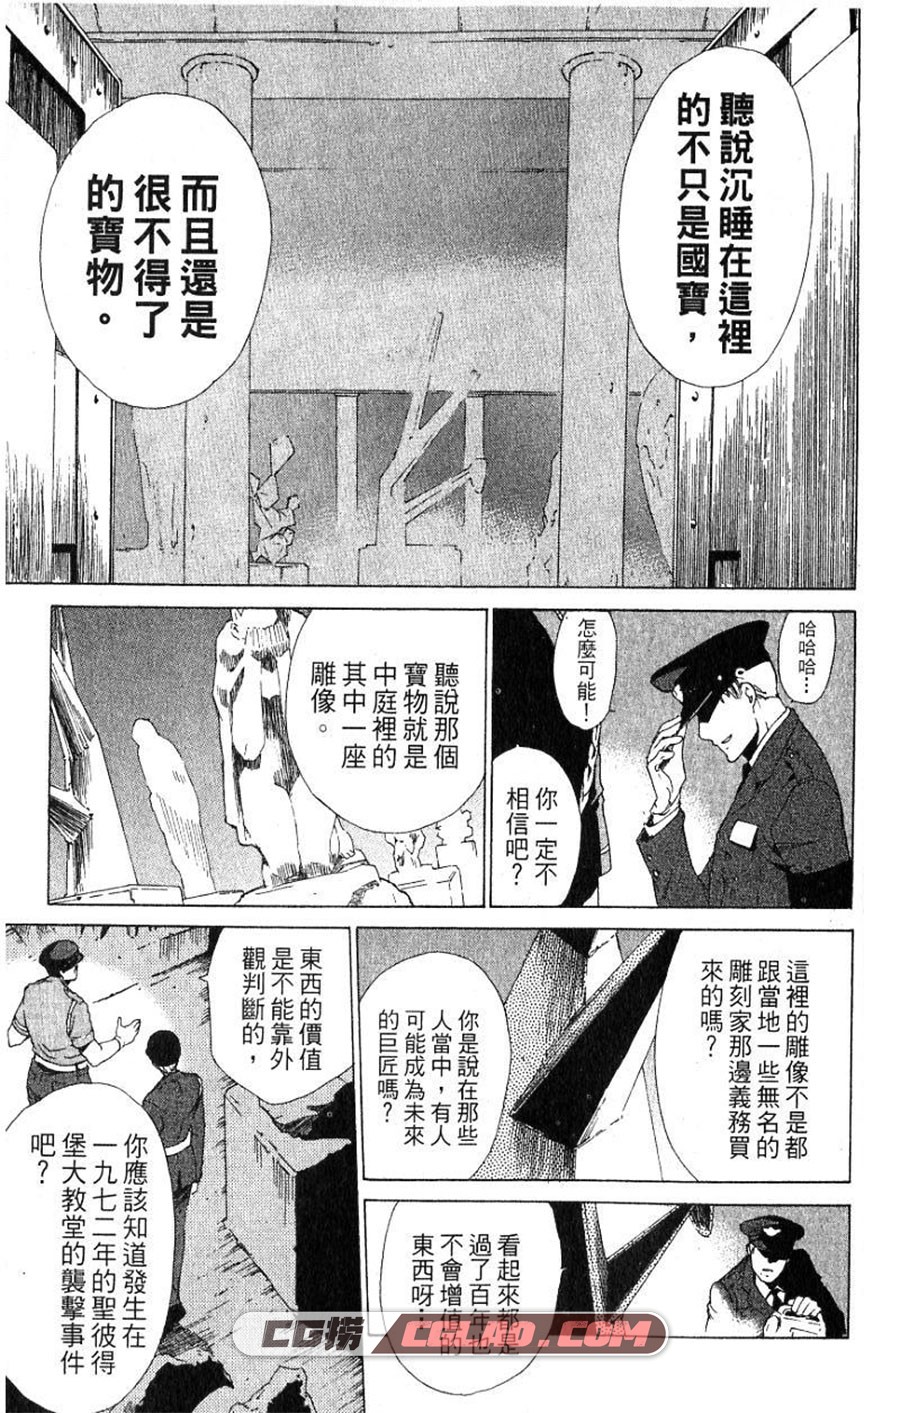 天幻少年 相川有 1-3卷 漫画全集完结下载 百度网盘,01-004.jpg